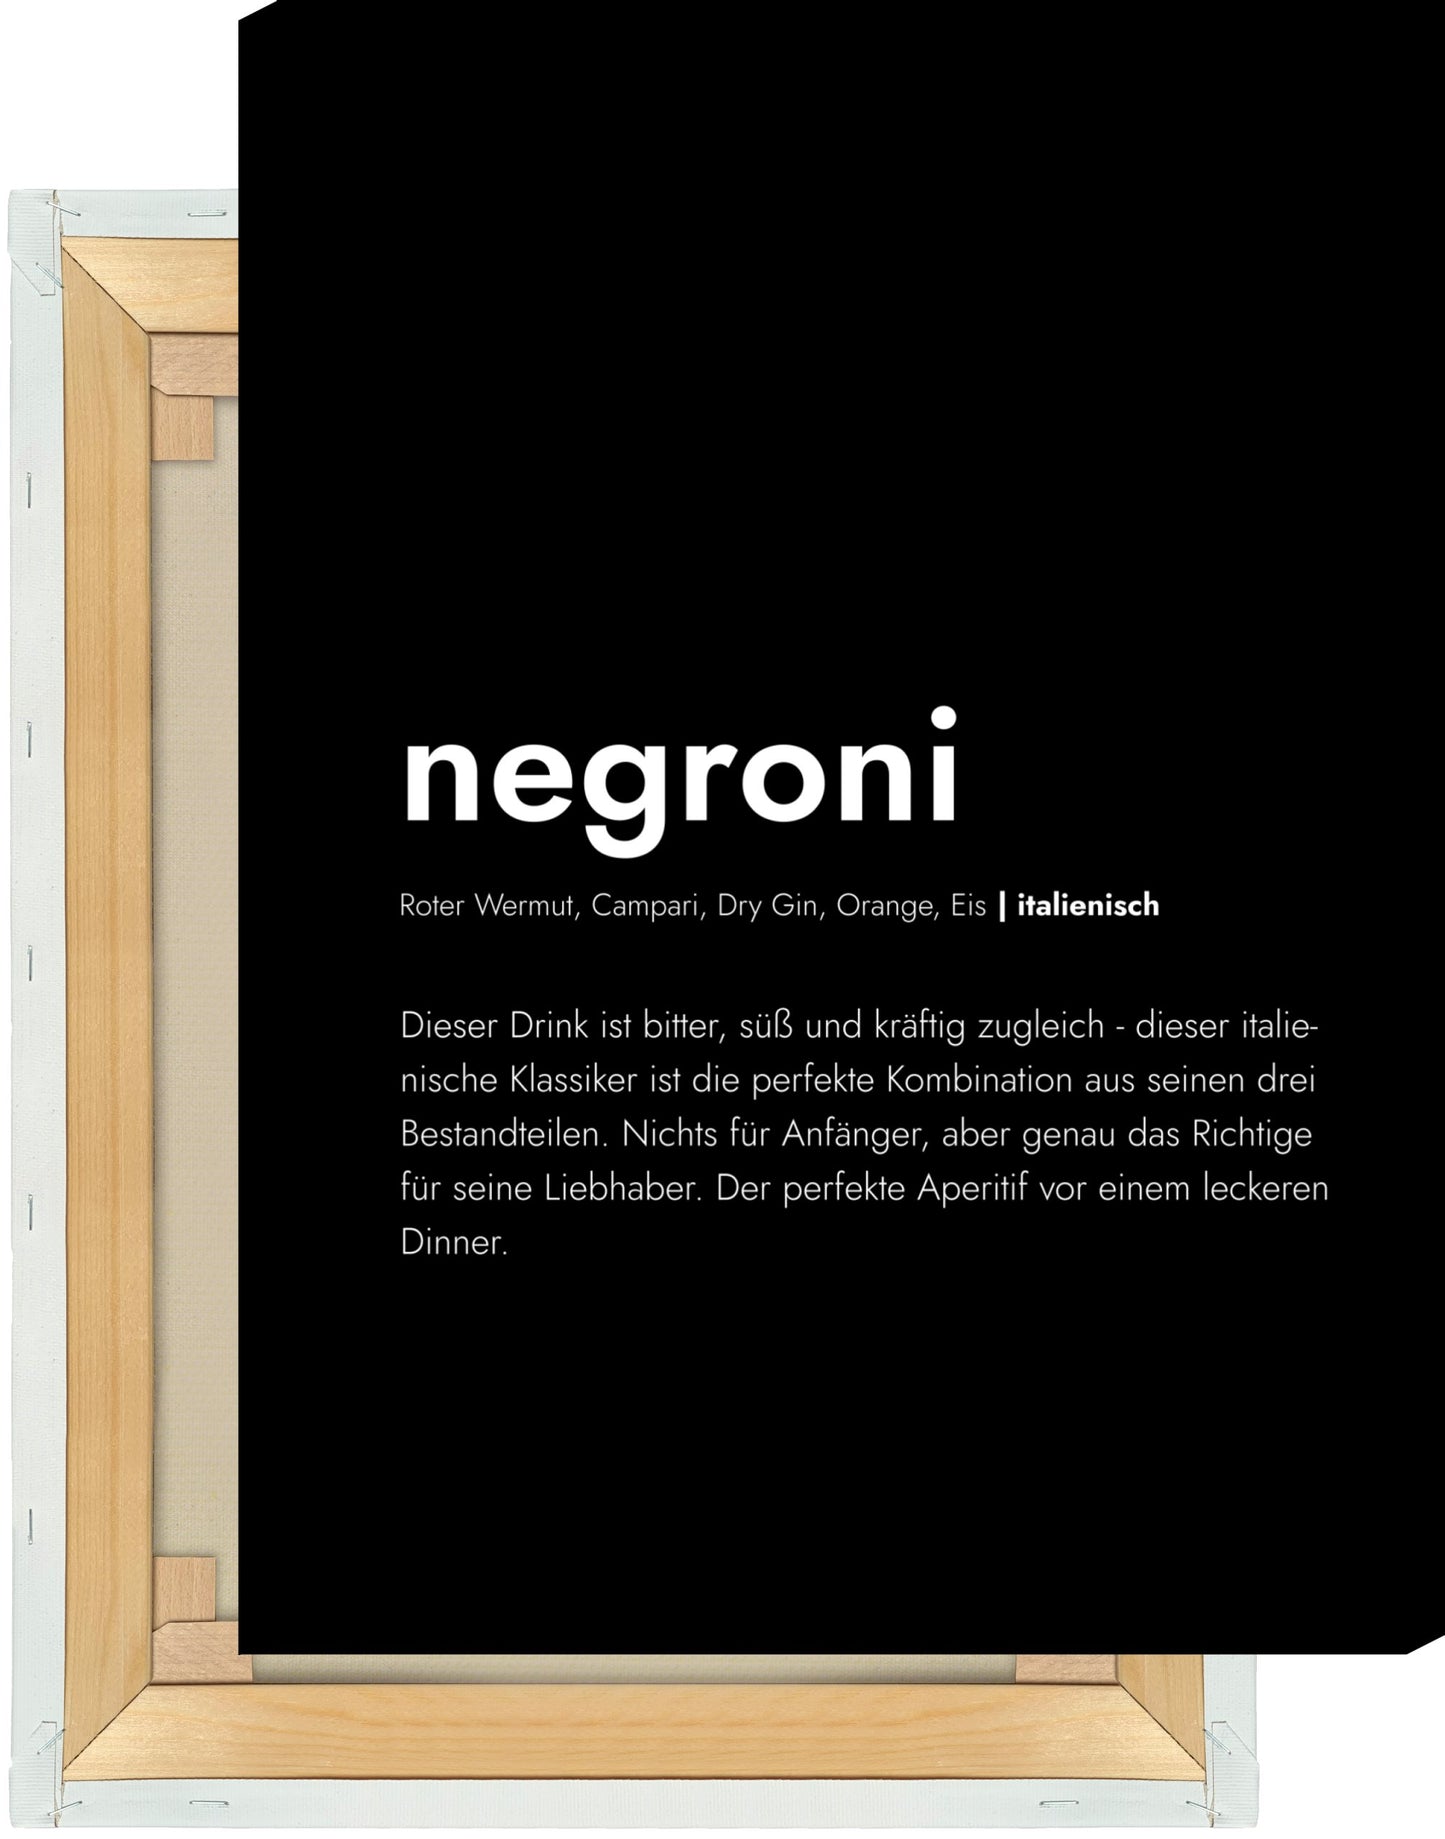 Leinwand Negroni - Definition